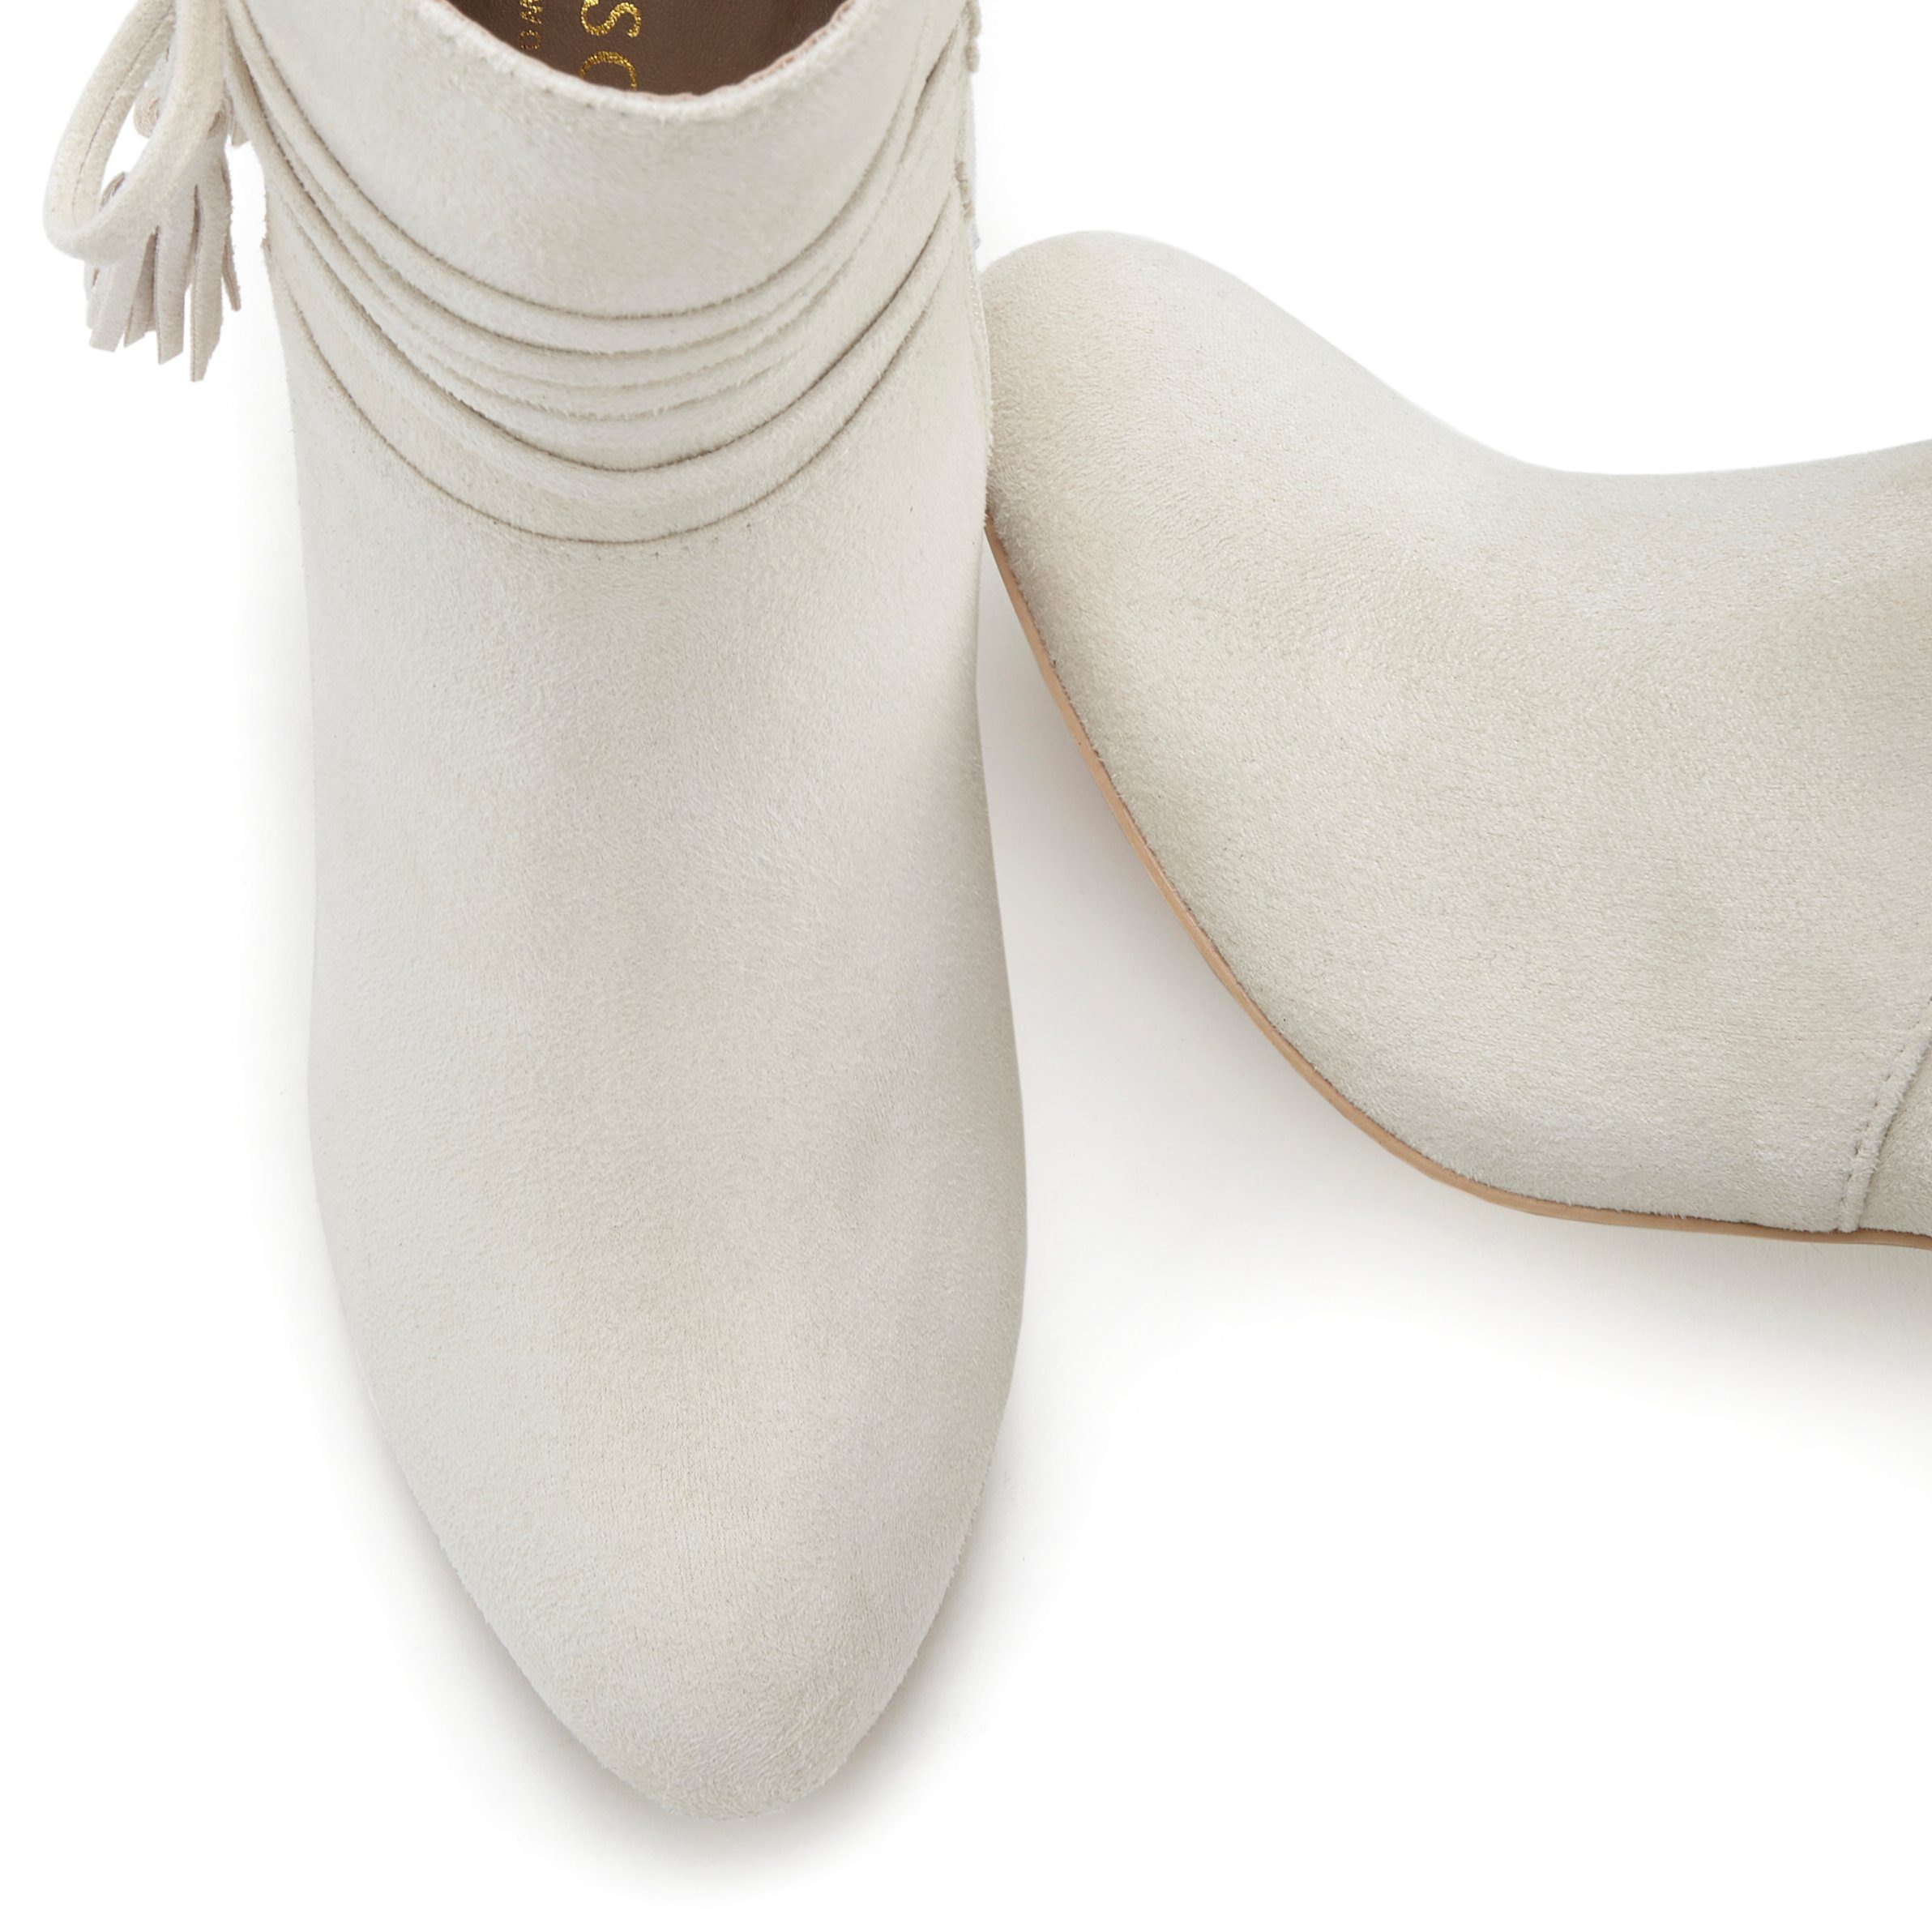 High-Heel-Stiefelette, Stiefelette LASCANA beige Blockabsatz, Stiefel mit Boots, Ankle